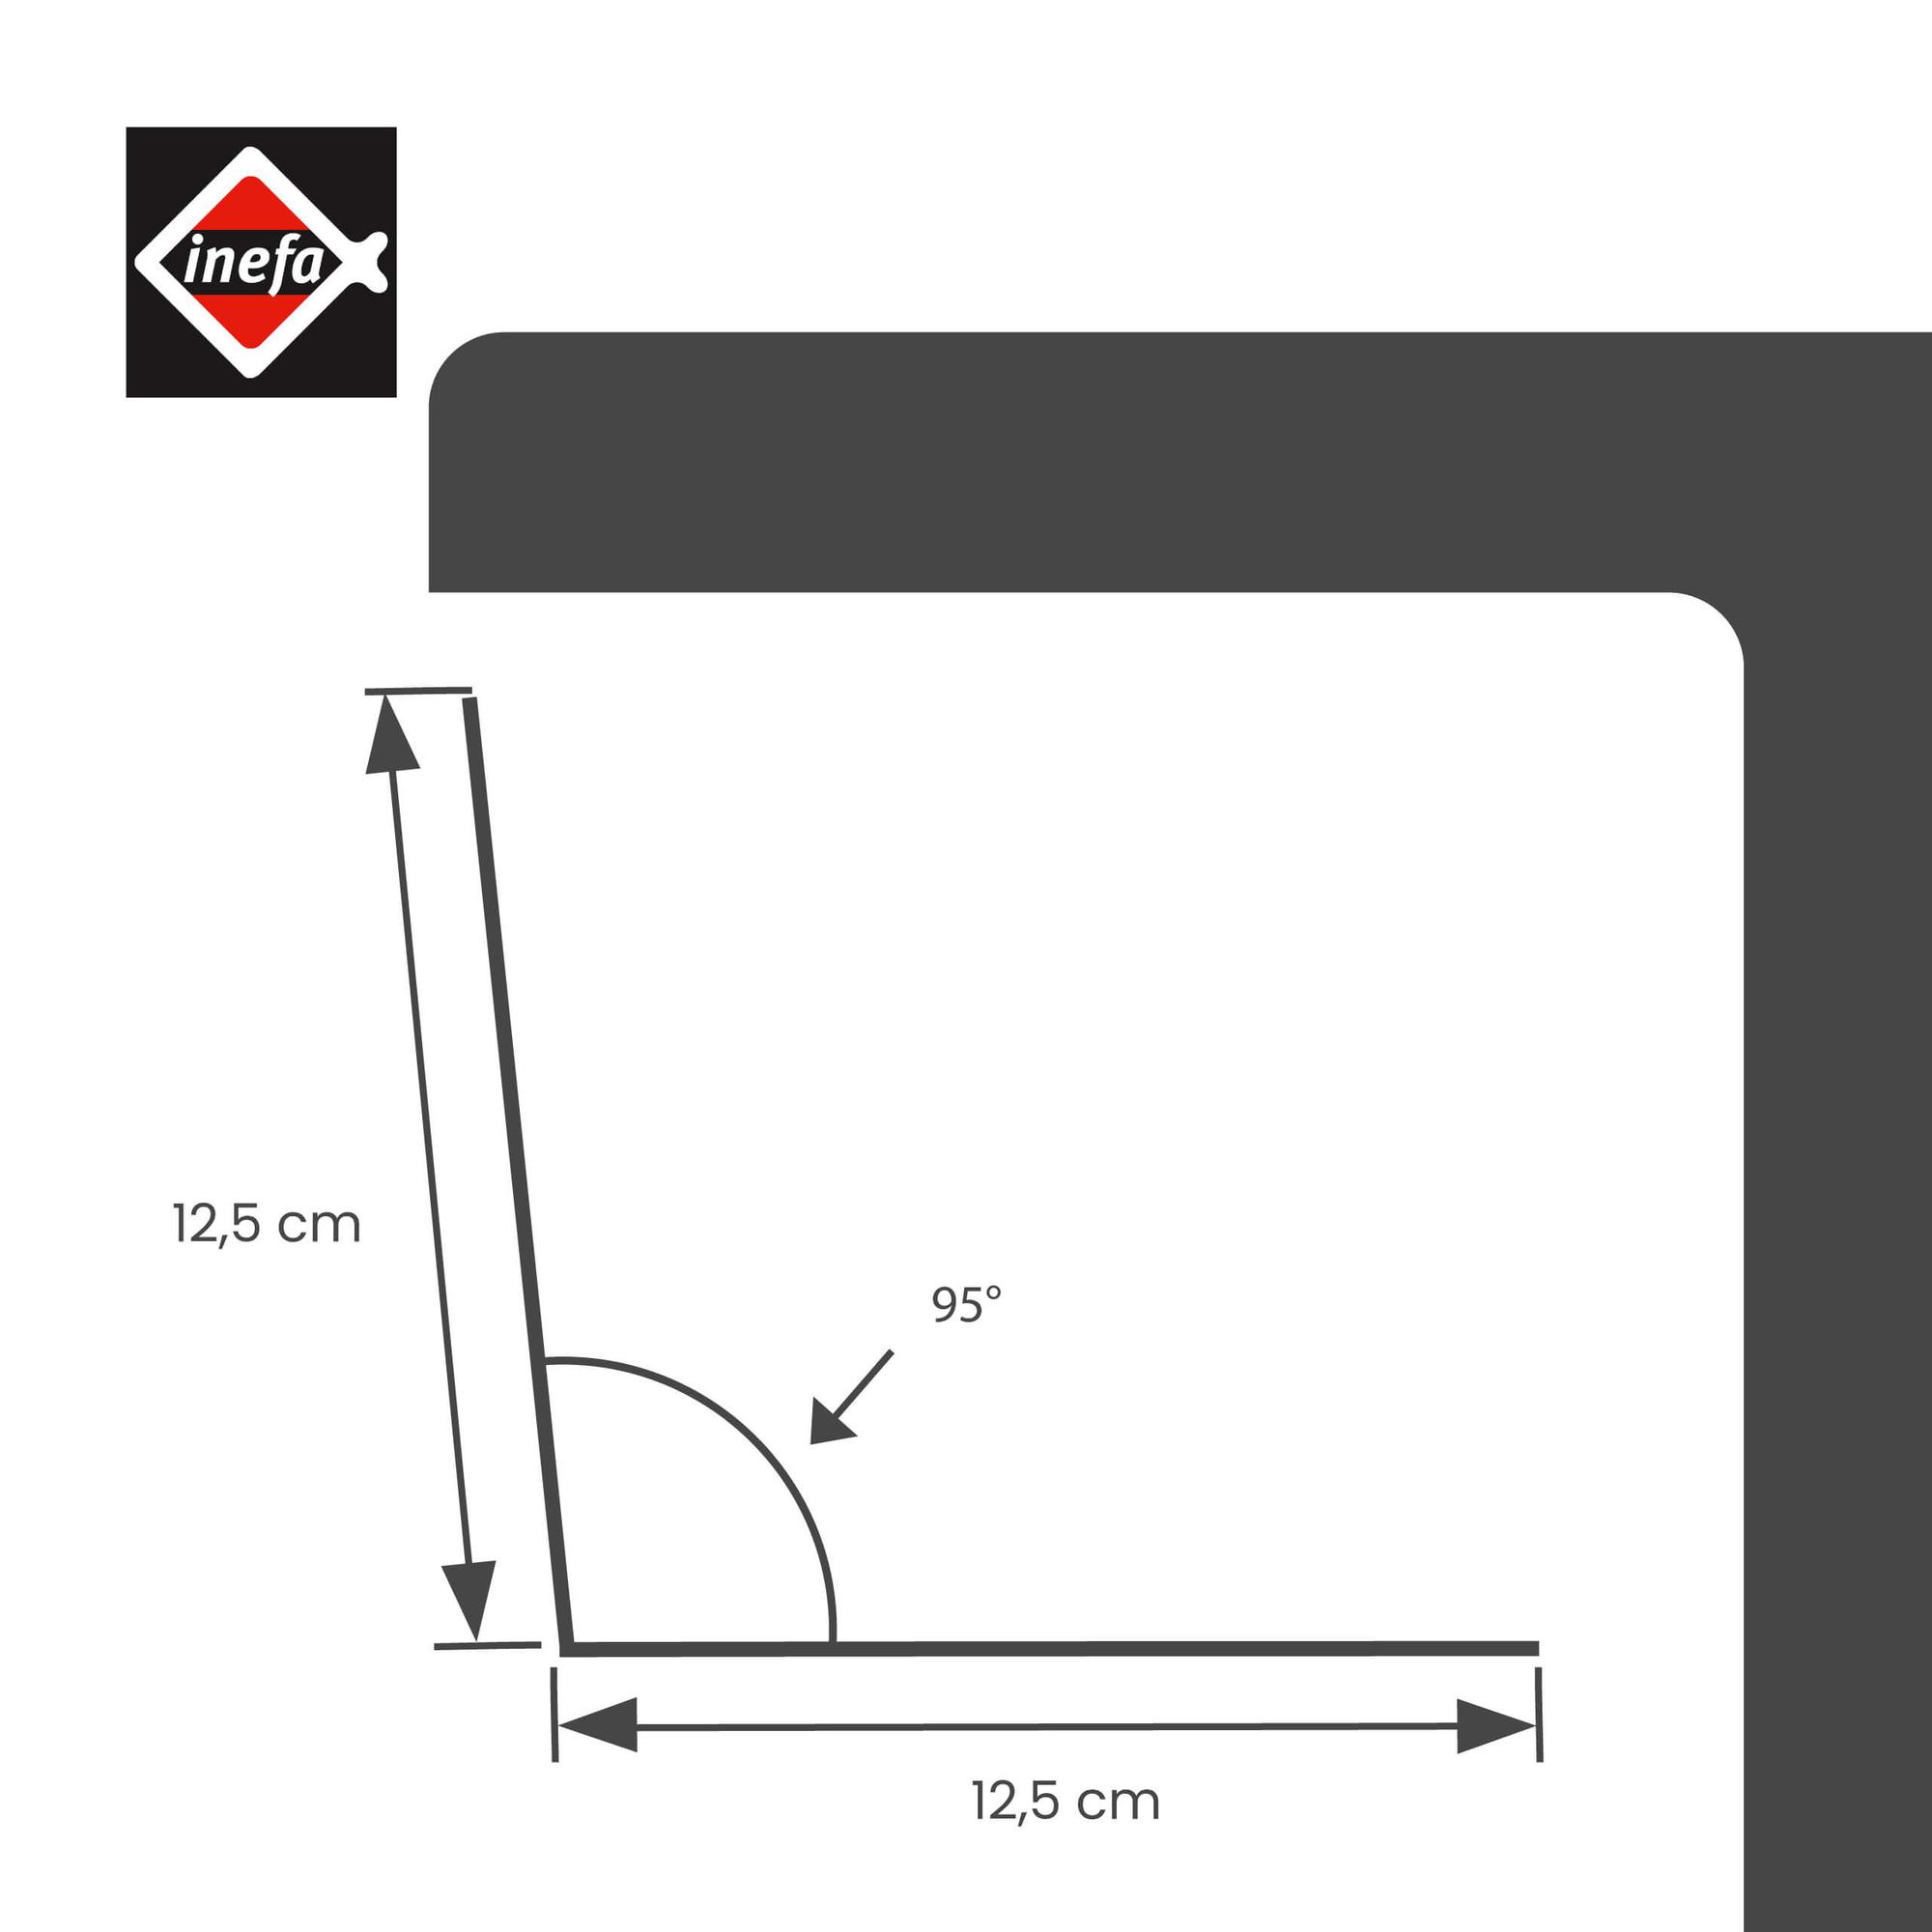 winkelblech-dach-ohne-wasserfalz-aluminium-silber-200cm,-1-stueck